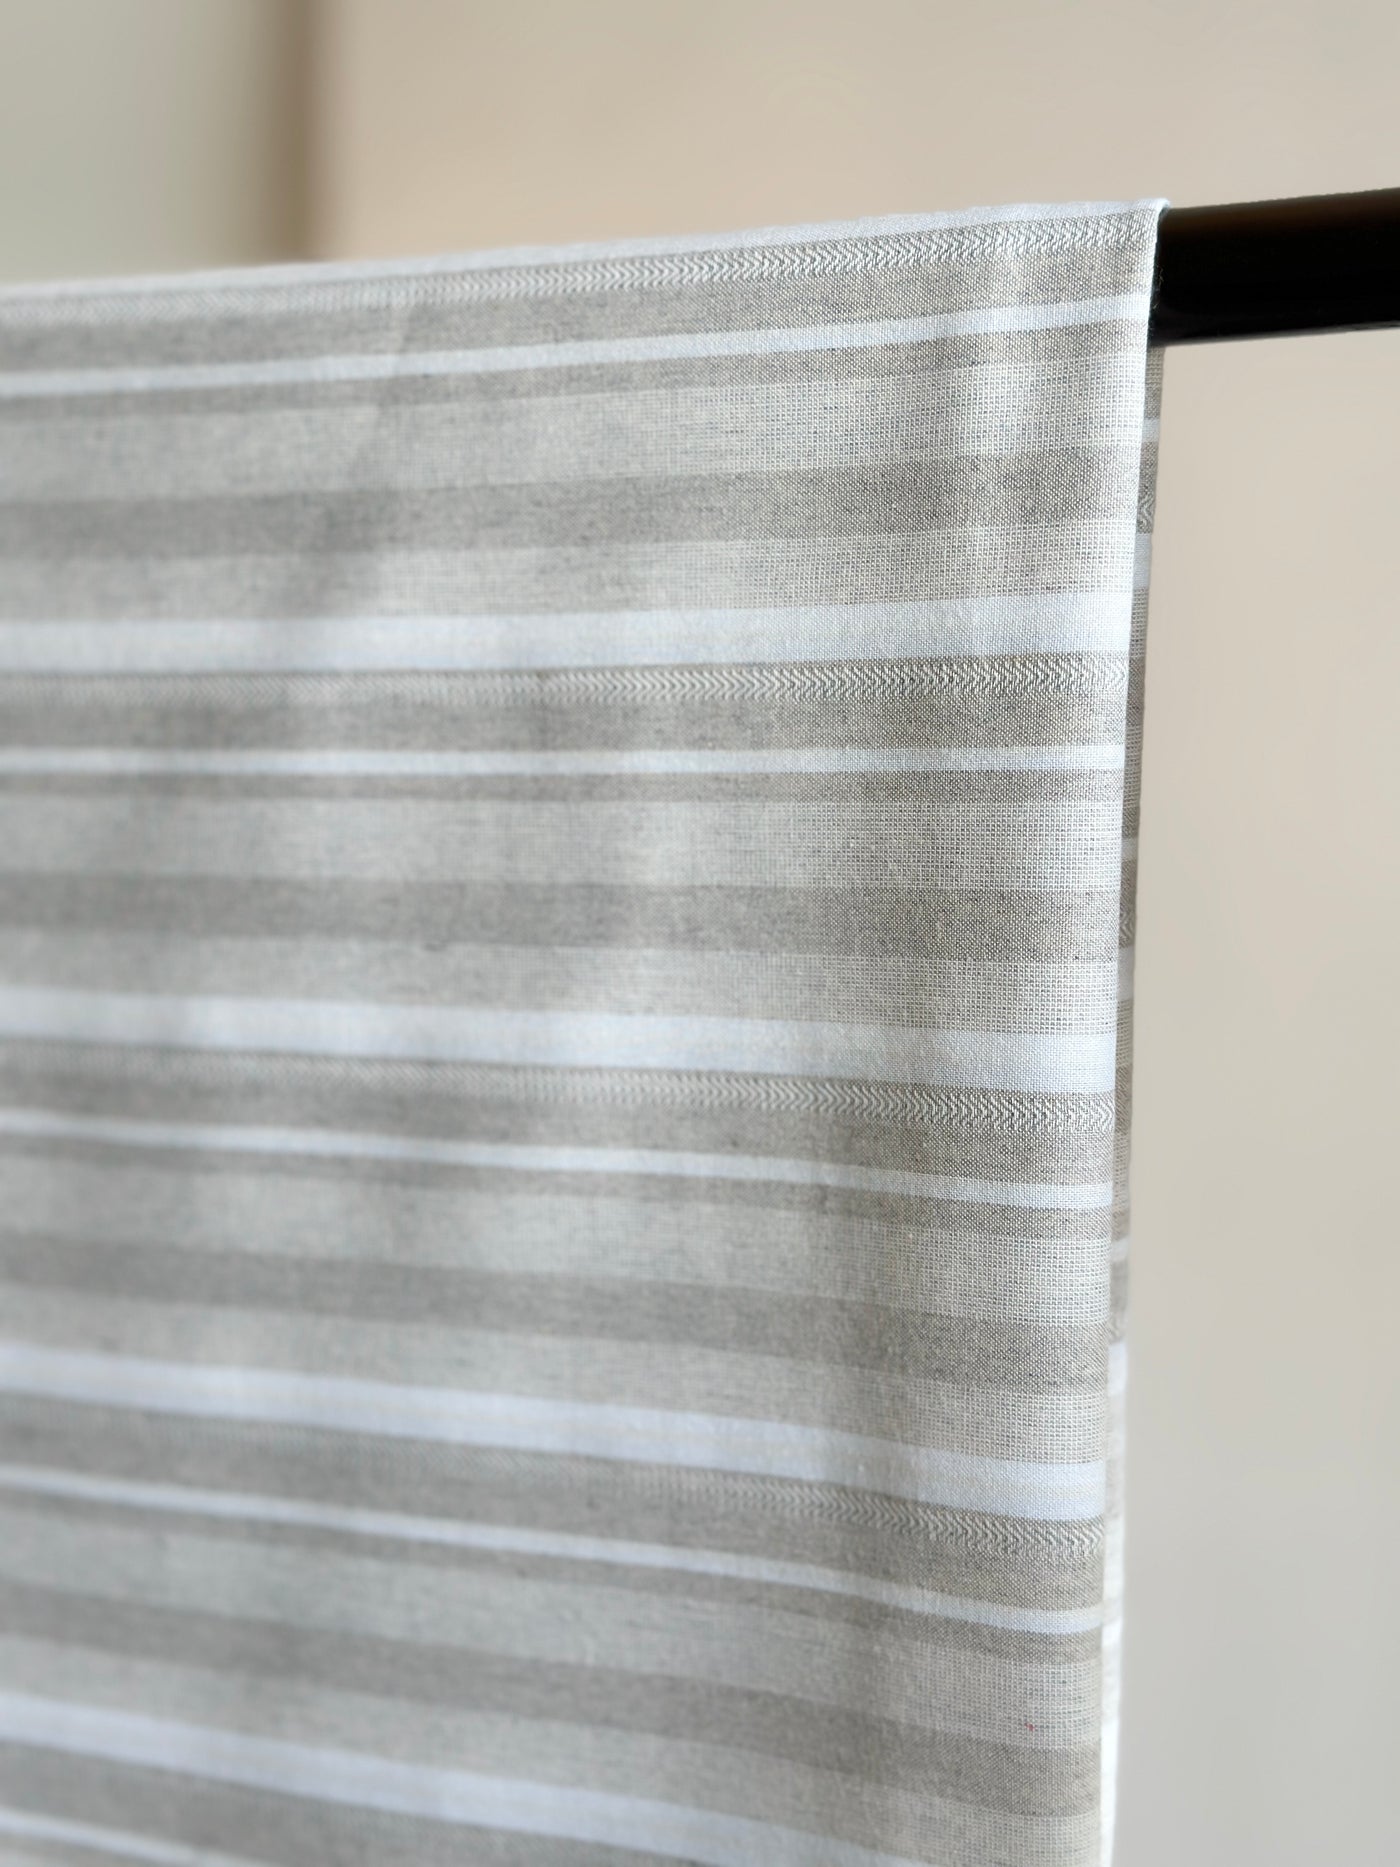 IDRIS Pelikat Style Samping in Grey Stripes